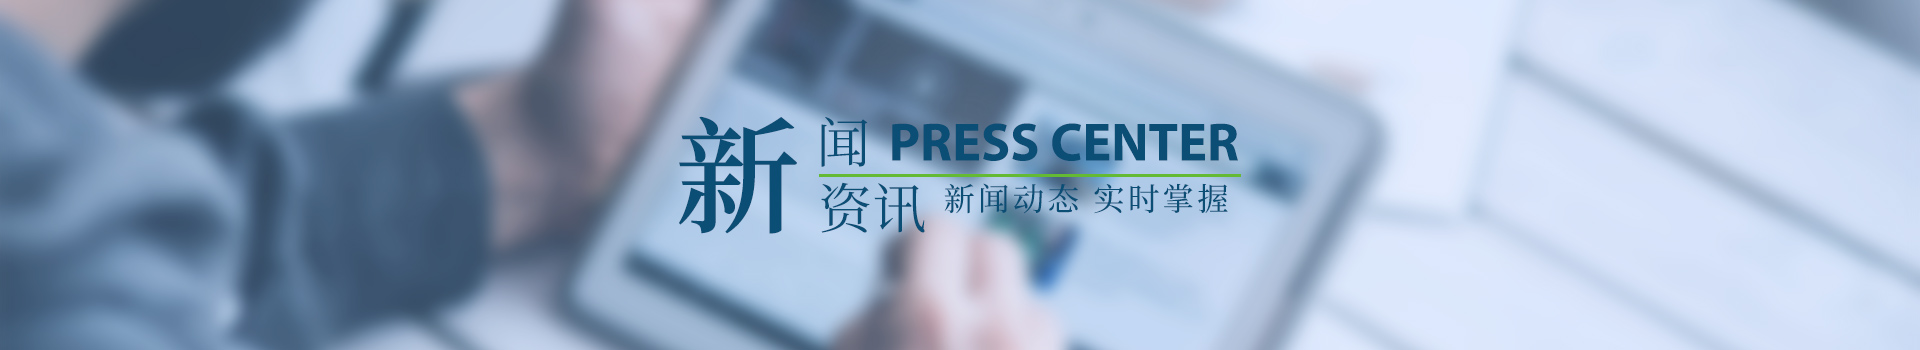 武汉佰惠丰电子科技有限公司提供电子排线外发加工的手工活